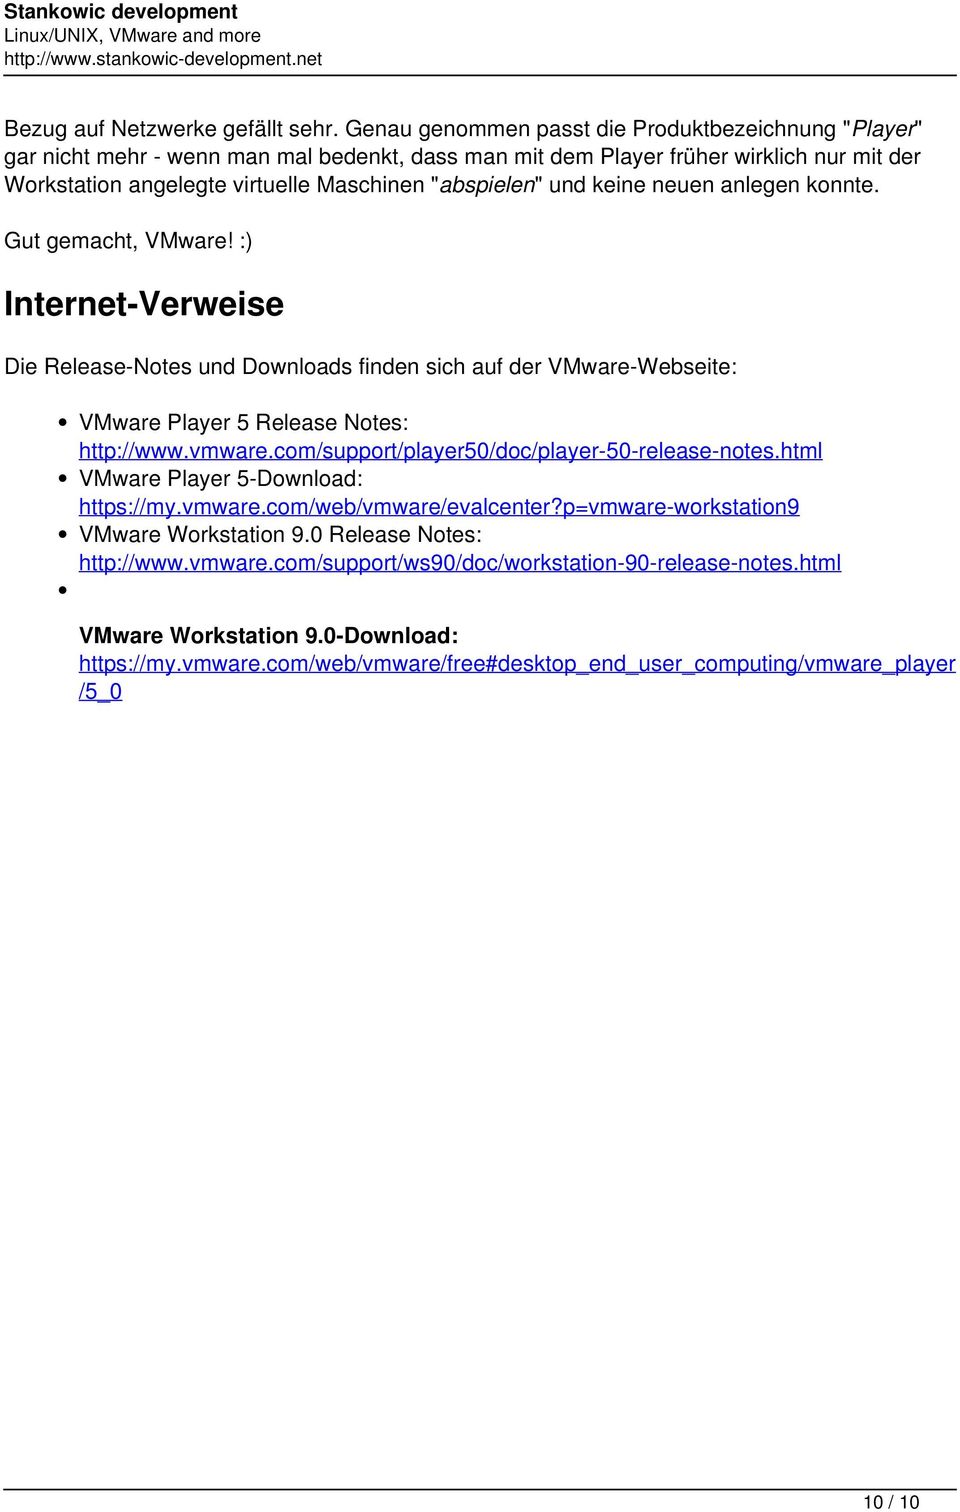 und keine neuen anlegen konnte. Gut gemacht, VMware! :) Internet-Verweise Die Release-Notes und Downloads finden sich auf der VMware-Webseite: VMware Player 5 Release Notes: http://www.vmware.